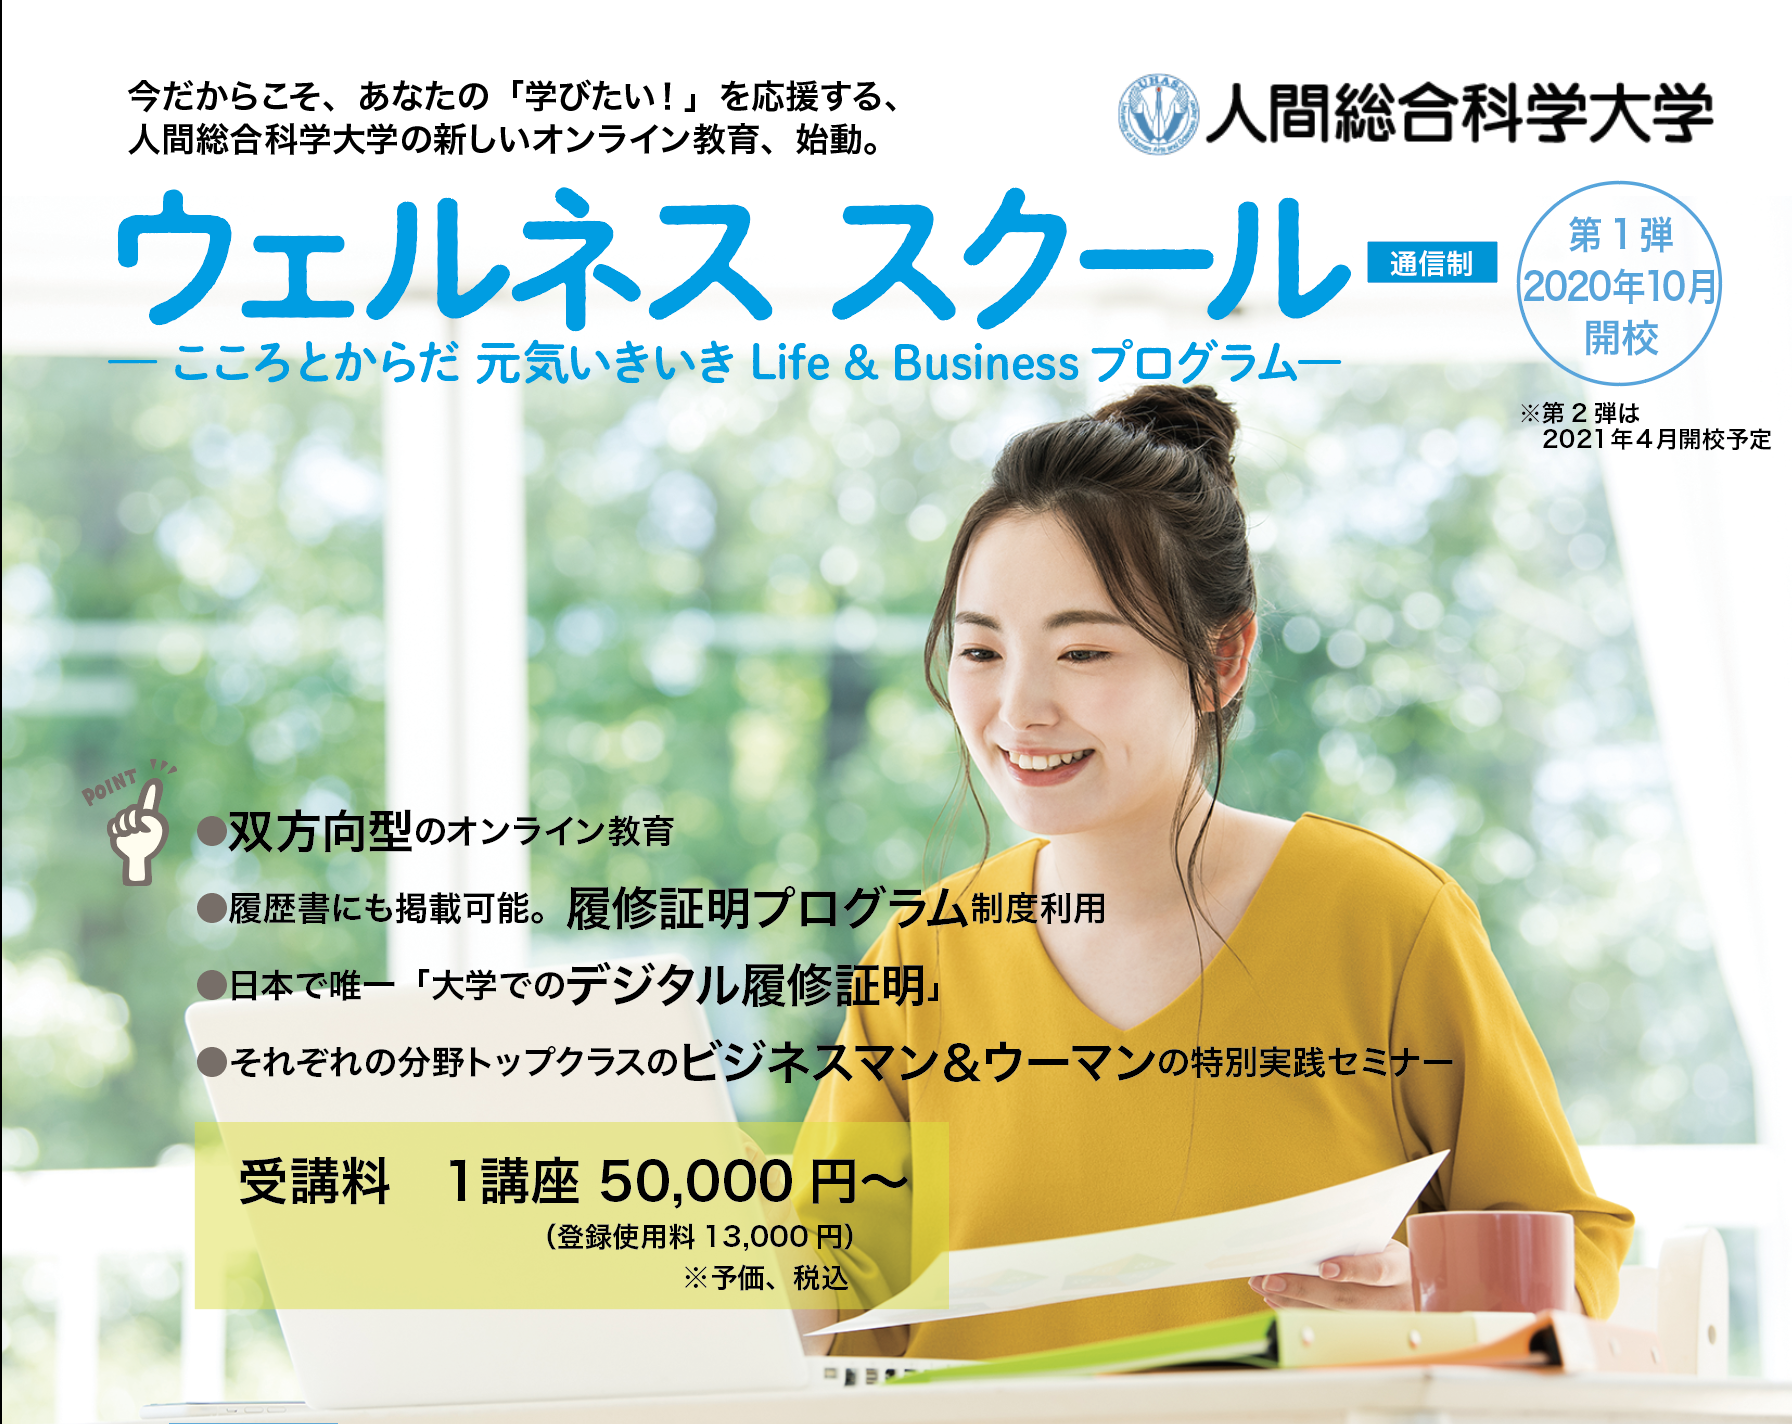 キャリアに反映できる！日本で数少ない大学でのデジタル履修証明（オープンバッジ）交付システムを導入「ウェルネススクール」2020年10月1日（木）開校予定！withコロナ時代のスマートキャリア向け、双方向型のオンライン教育